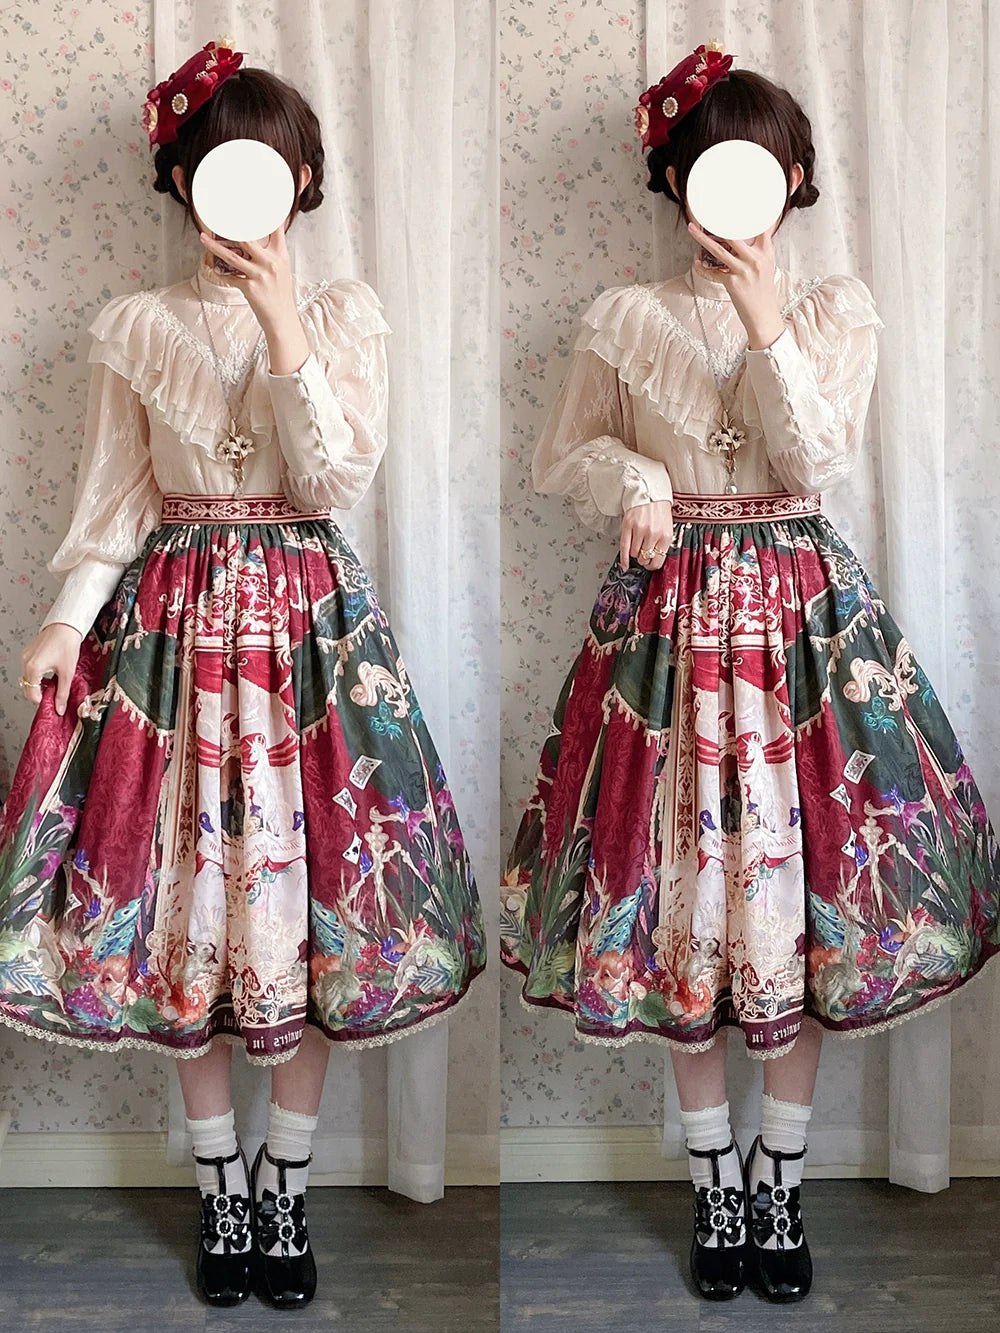 Wanhua Mirror 西洋貴族風スカート レースタイプ